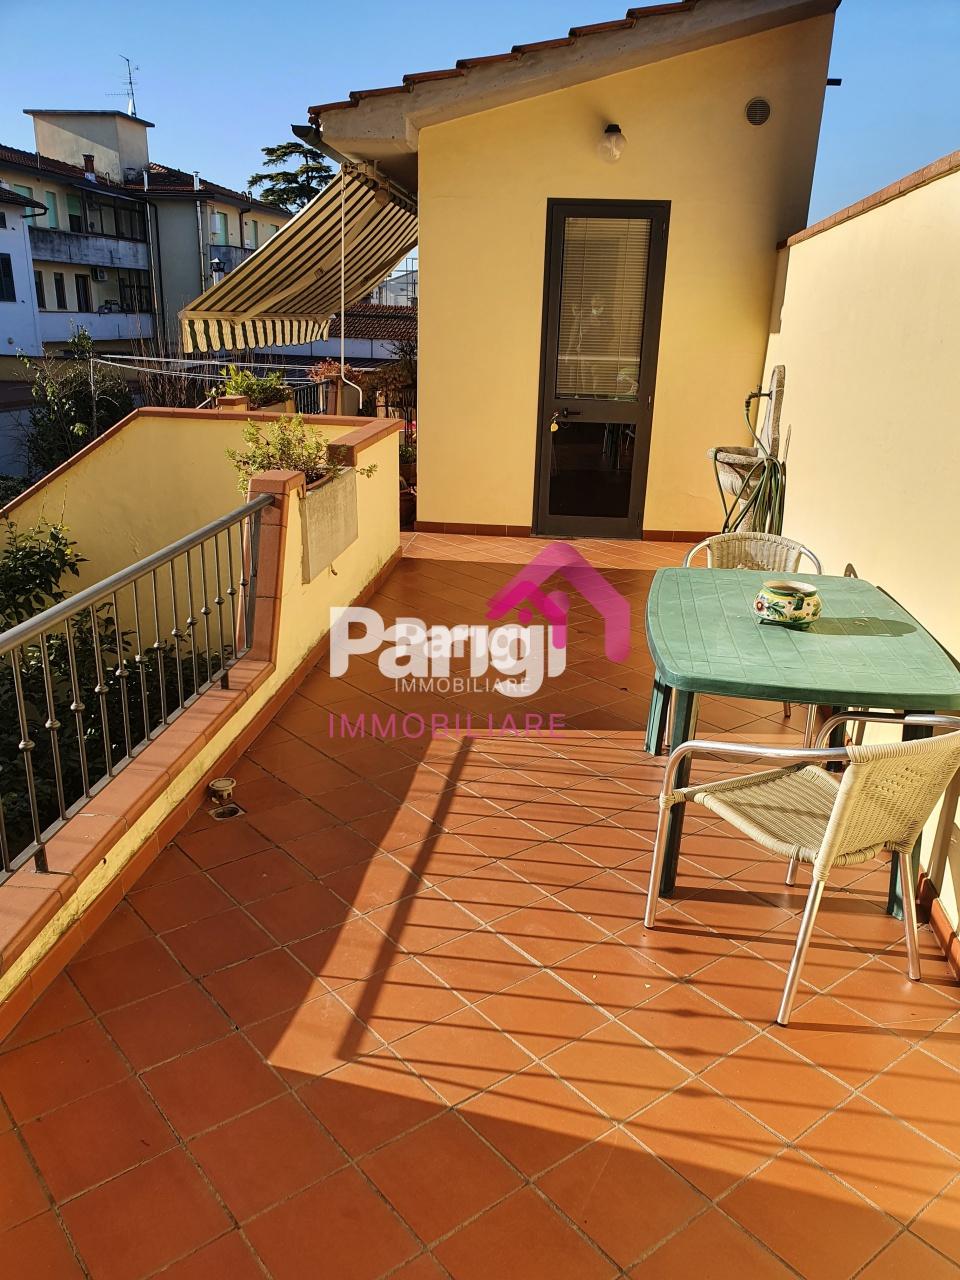 Appartamento in vendita a Prato, 8 locali, prezzo € 489.000 | PortaleAgenzieImmobiliari.it